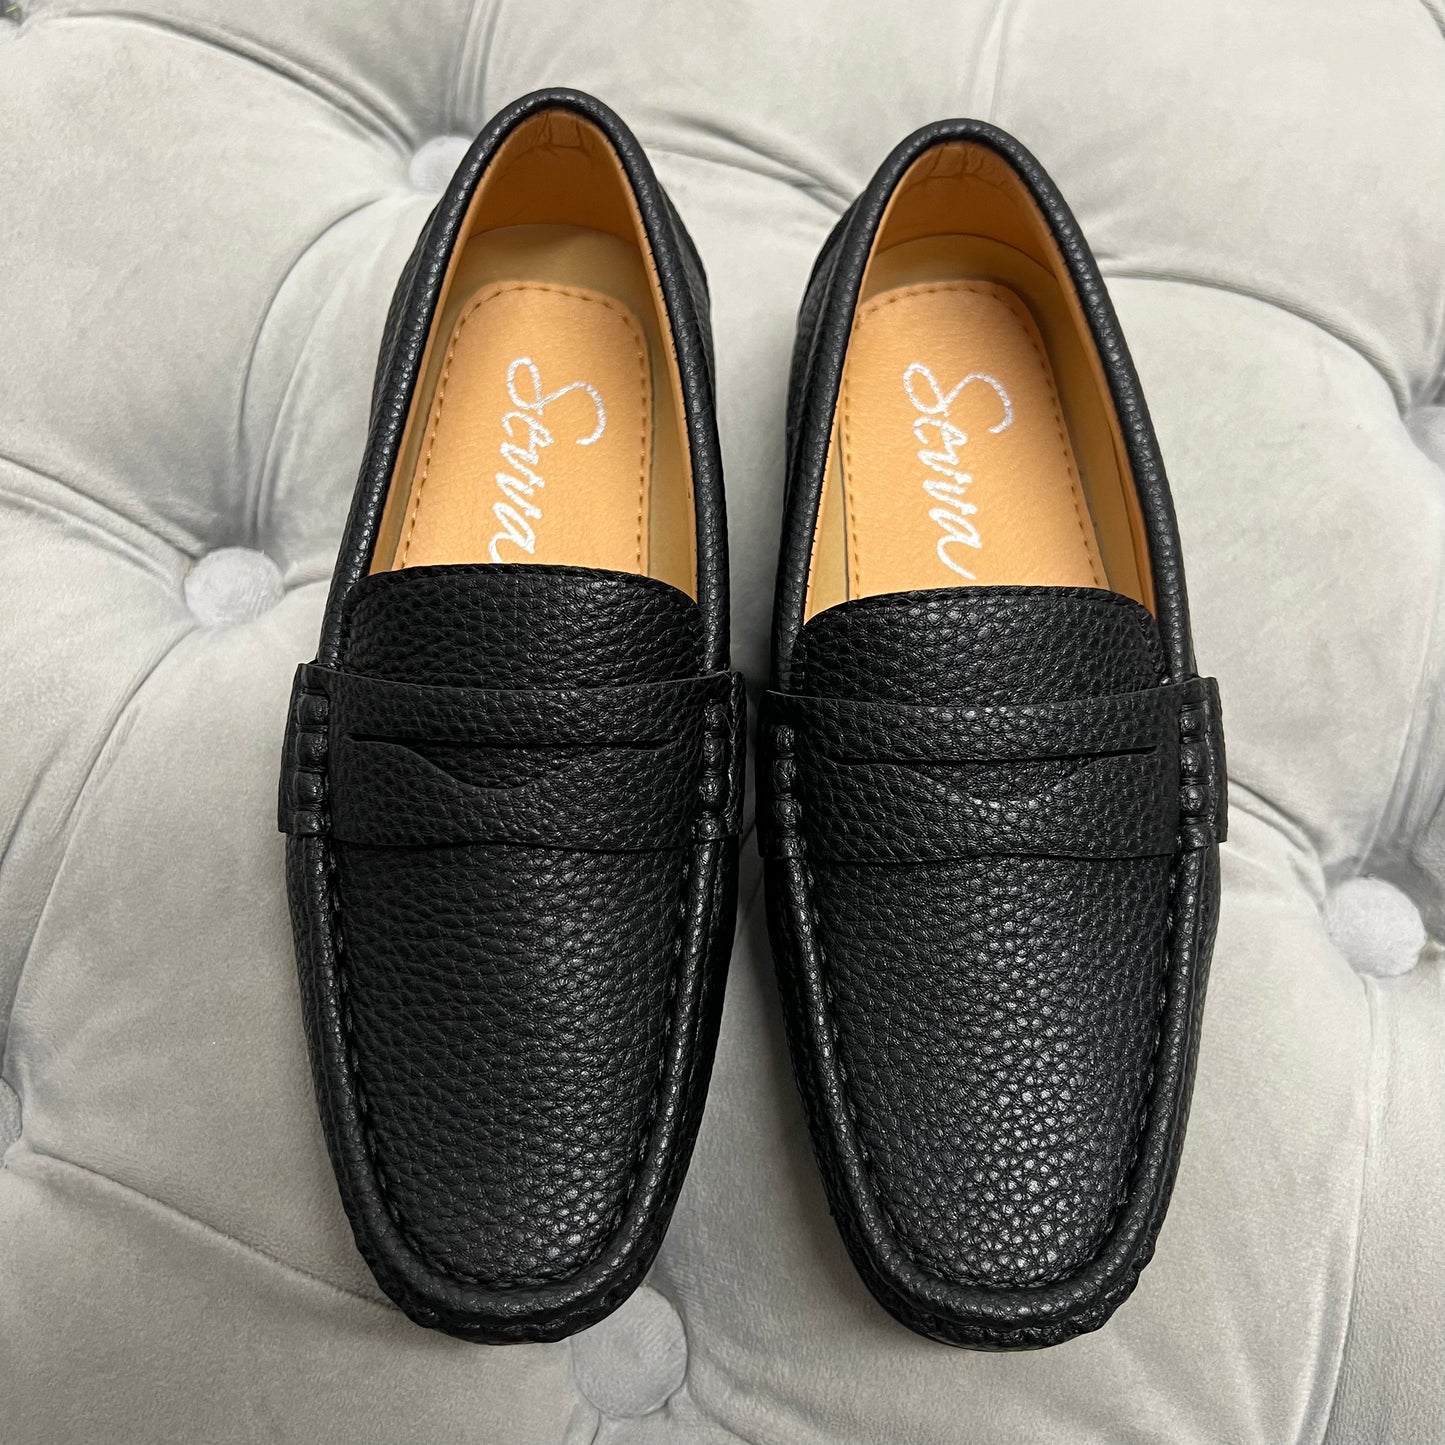 Boys “Hugo” Black Loafer Shoe